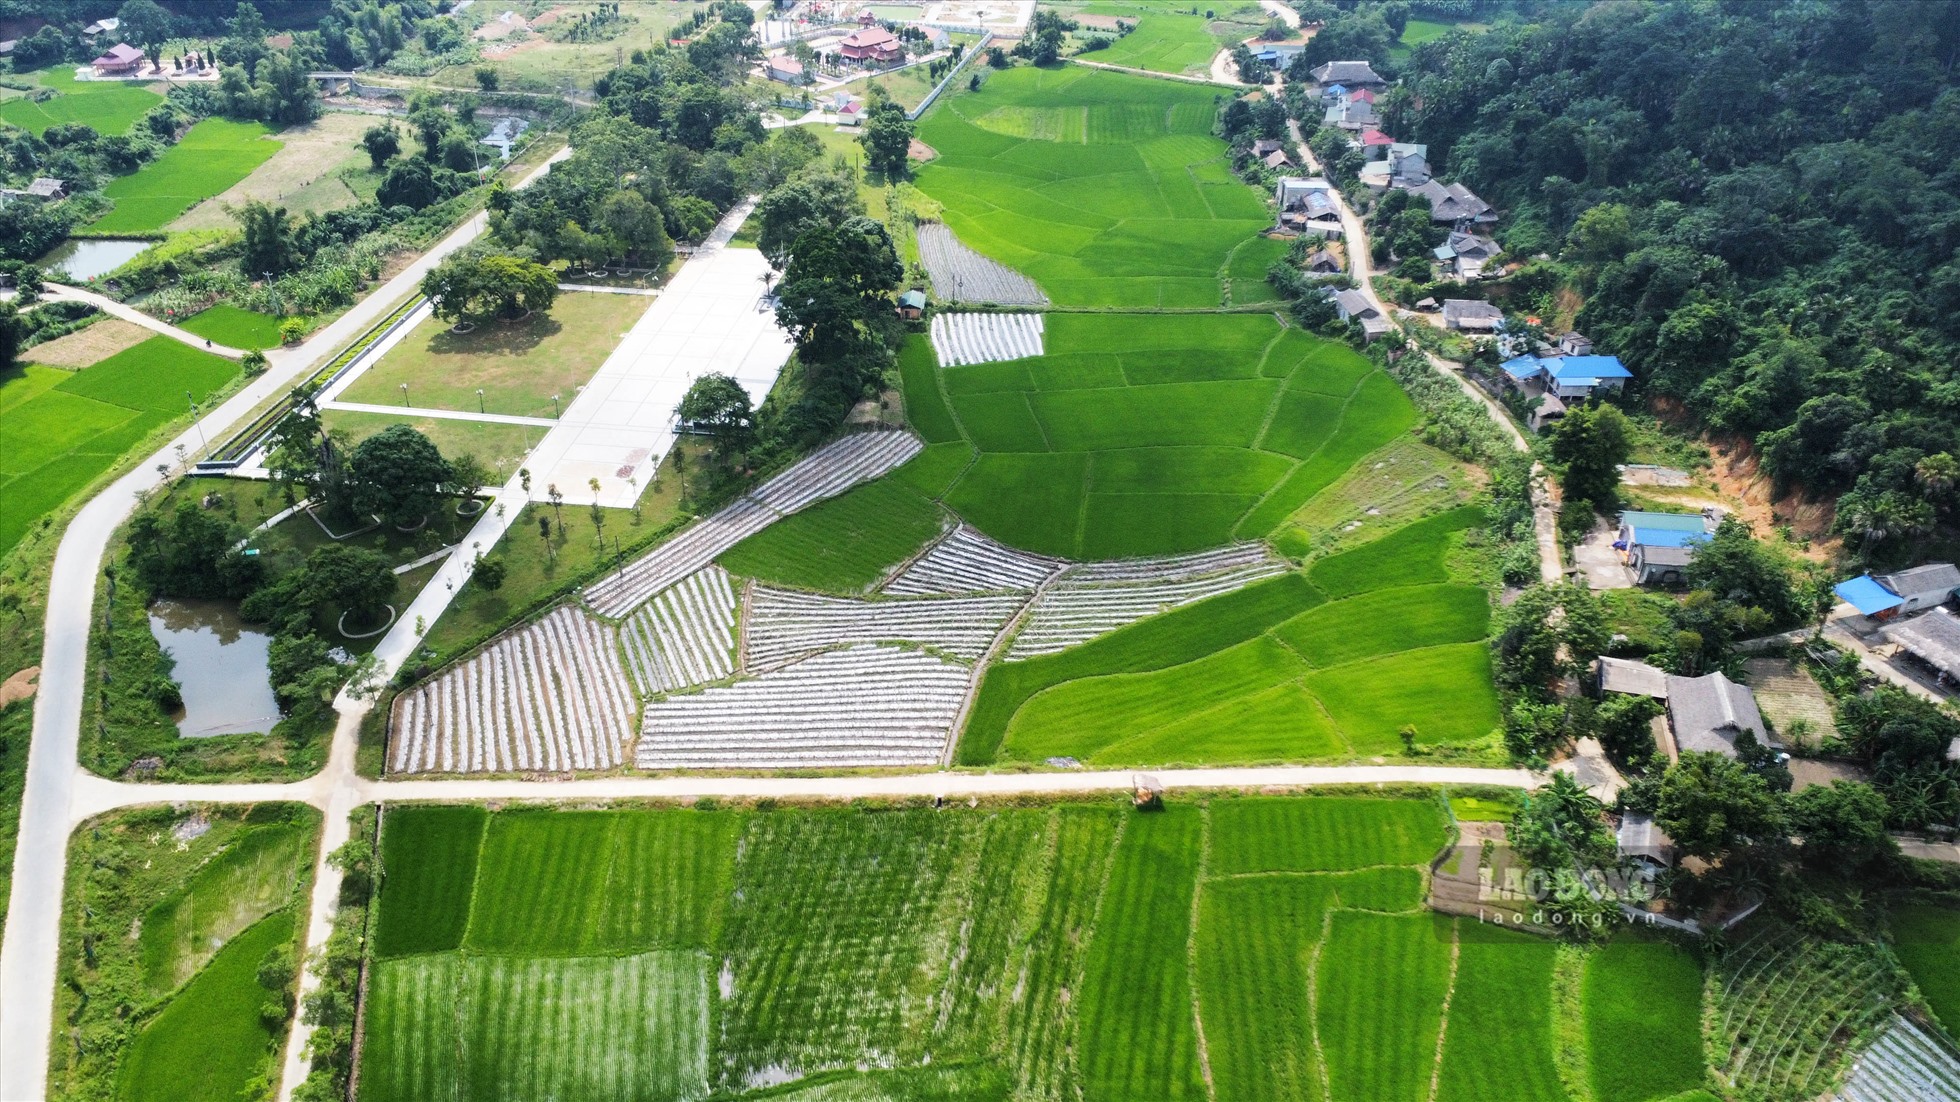 Nông nghiệp vẫn là ngành kinh tế mũi nhọn của người dân Tân Trào nhưng cách thức sản xuất đã thay đổi, ứng dụng những cách làm mới.